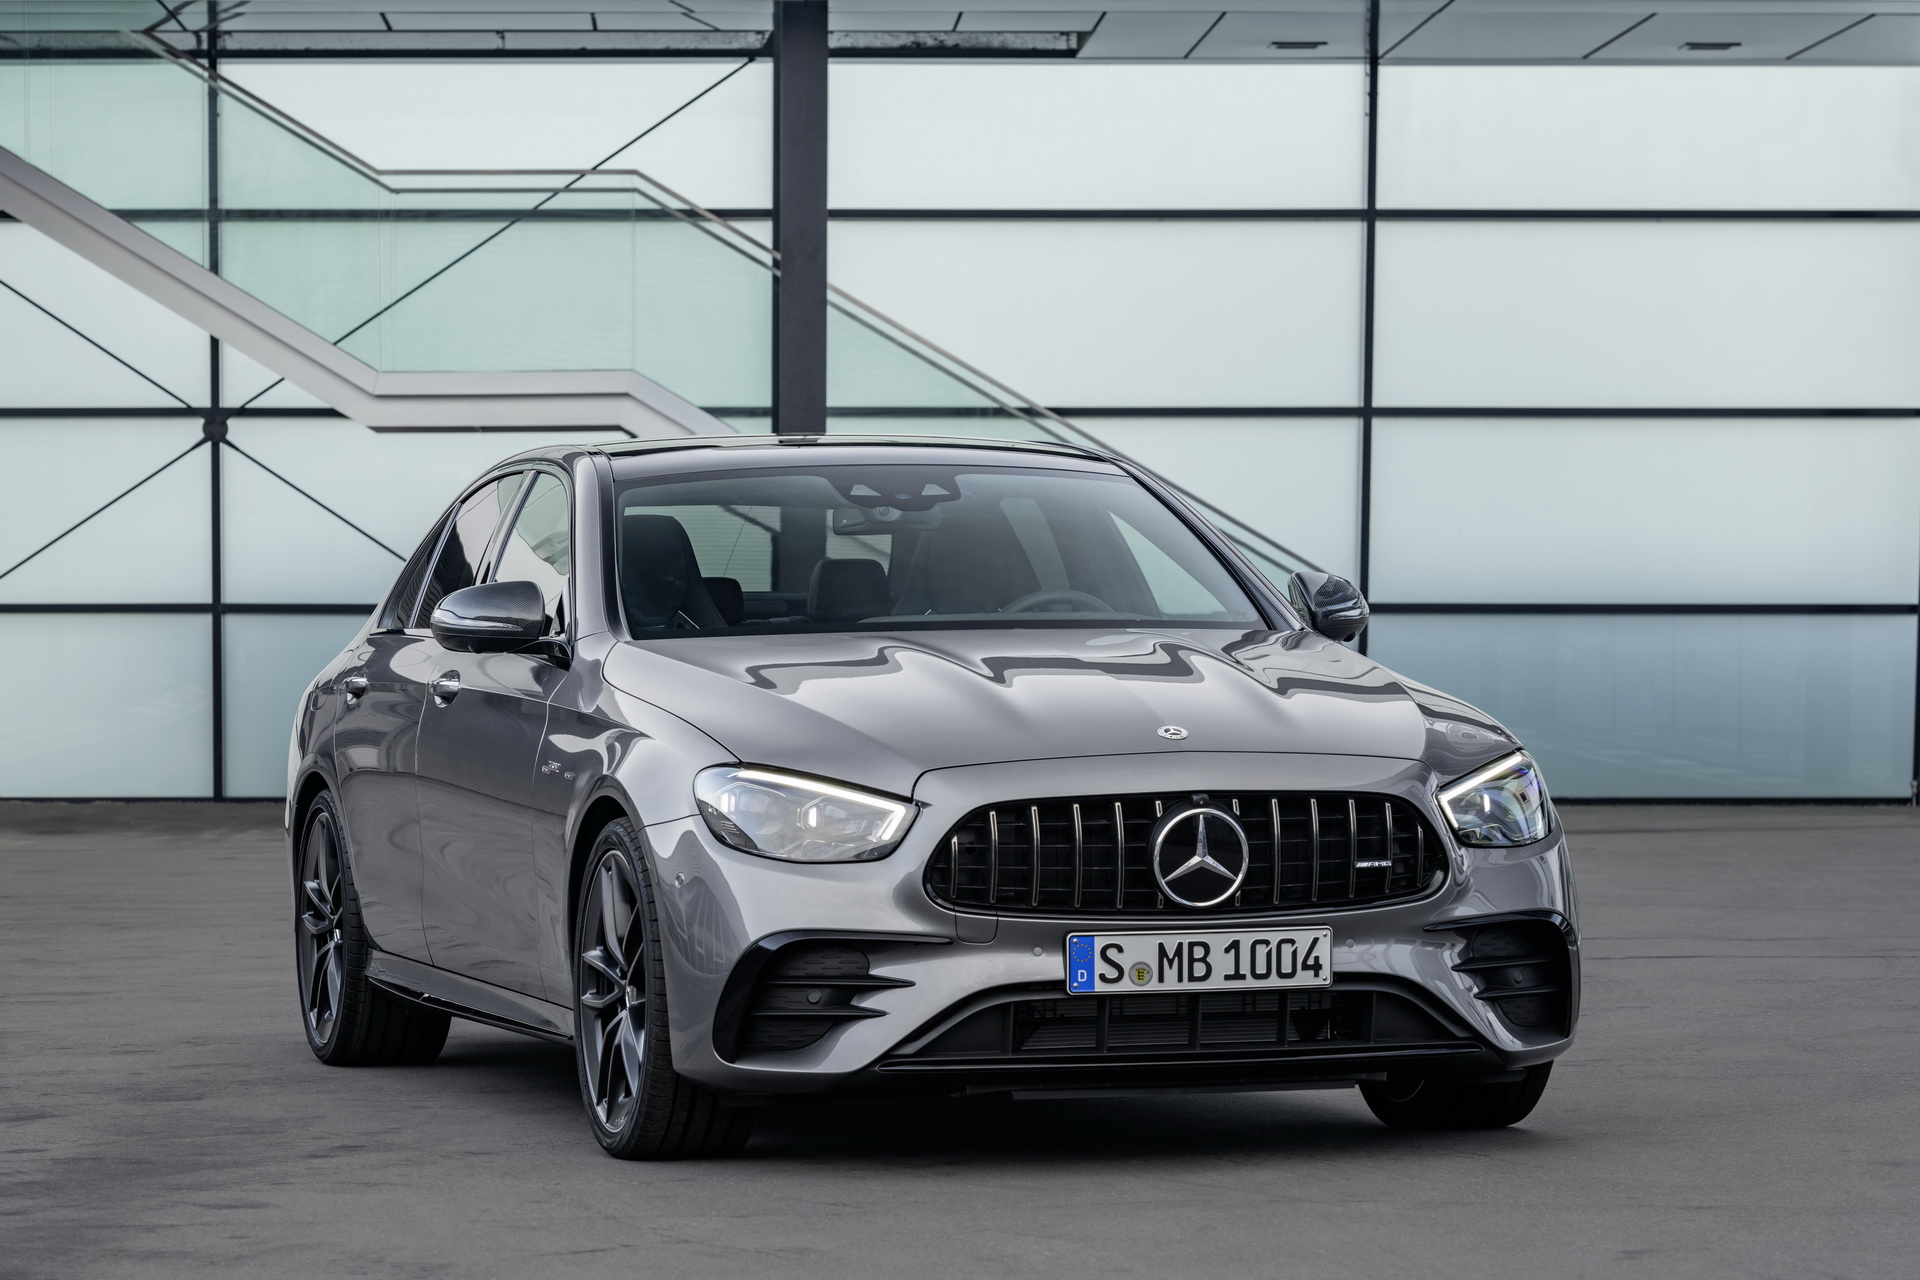 Vua doanh số' xe sang 2020 tiếp tục gọi tên Mercedes-Benz